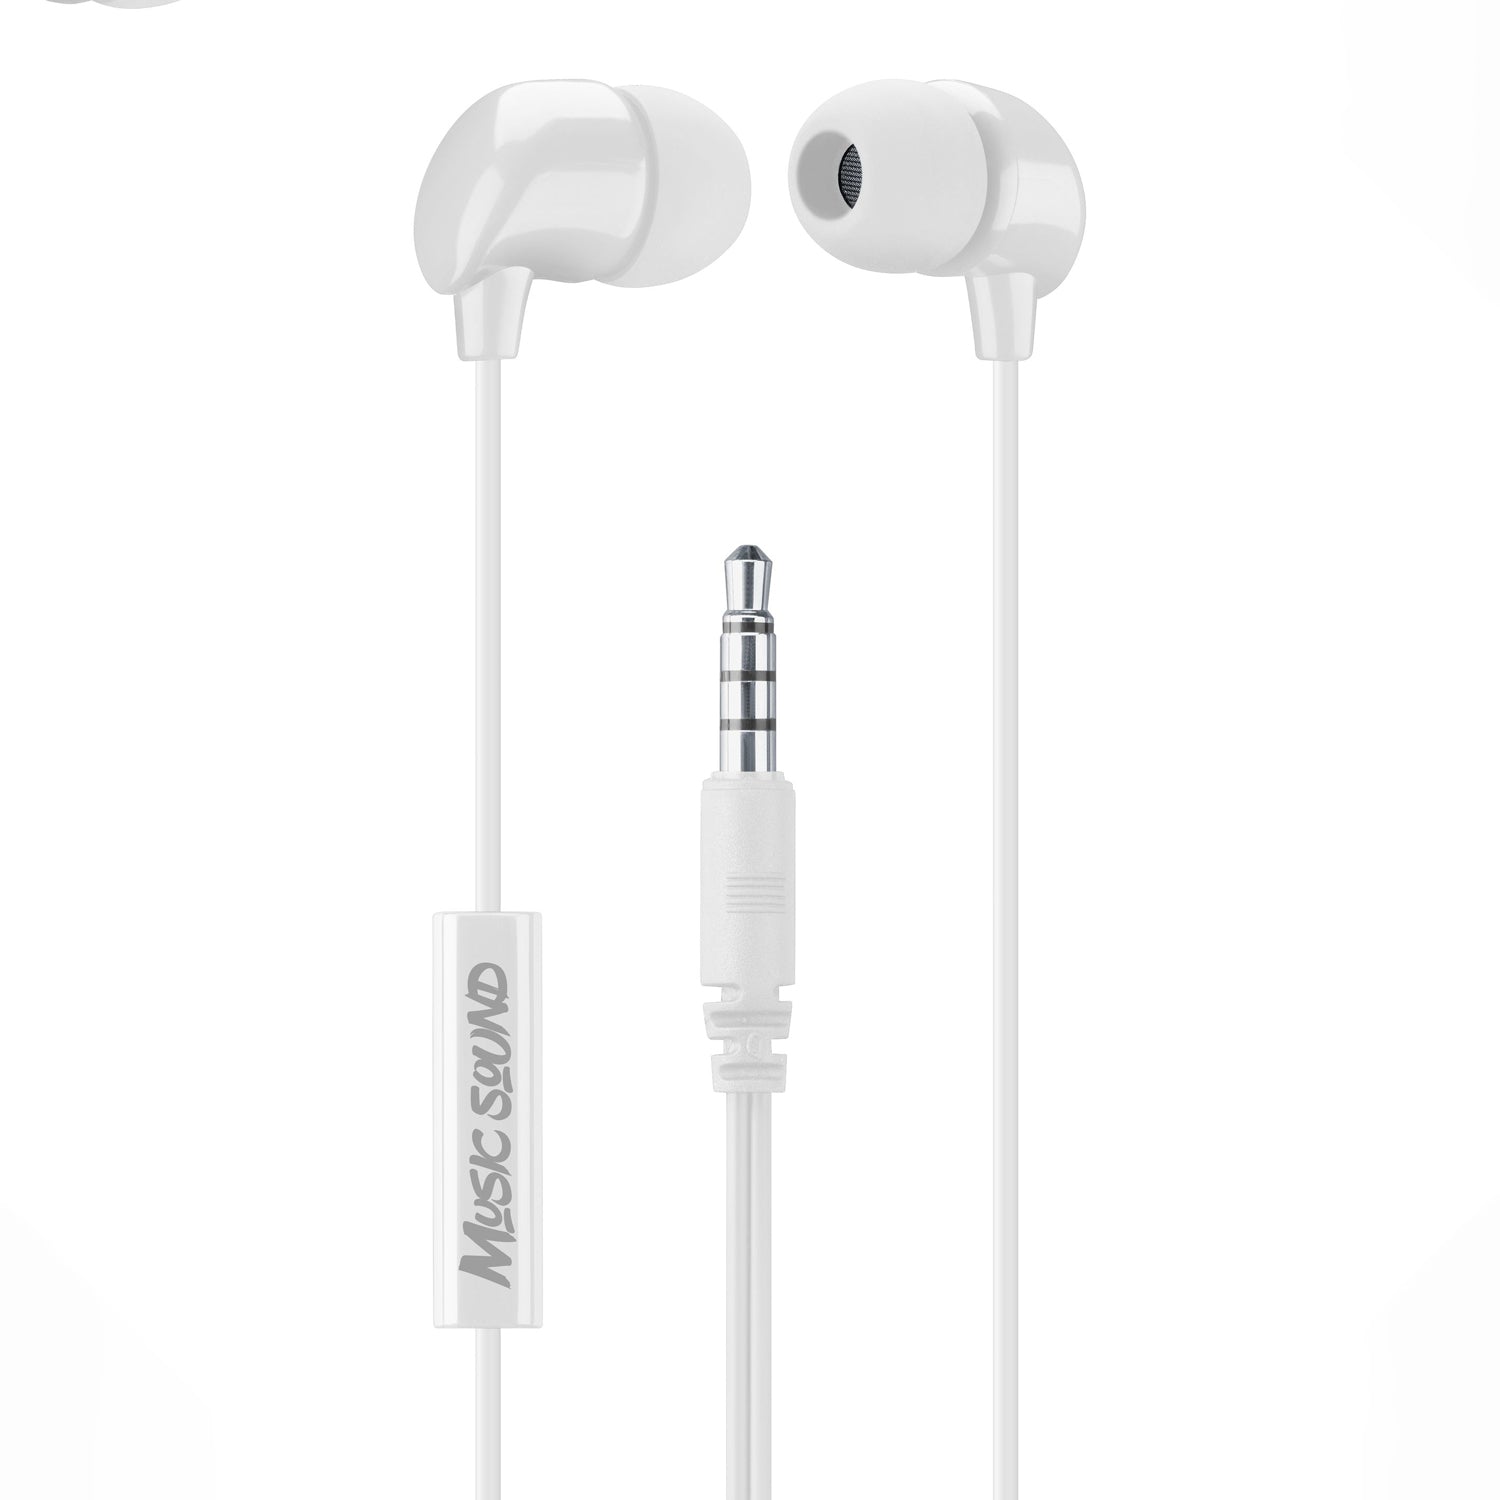 Auricolari con microfono In-Ear isolamento rumore pc smartphone tablet  bianco - Nonsoloinformatica